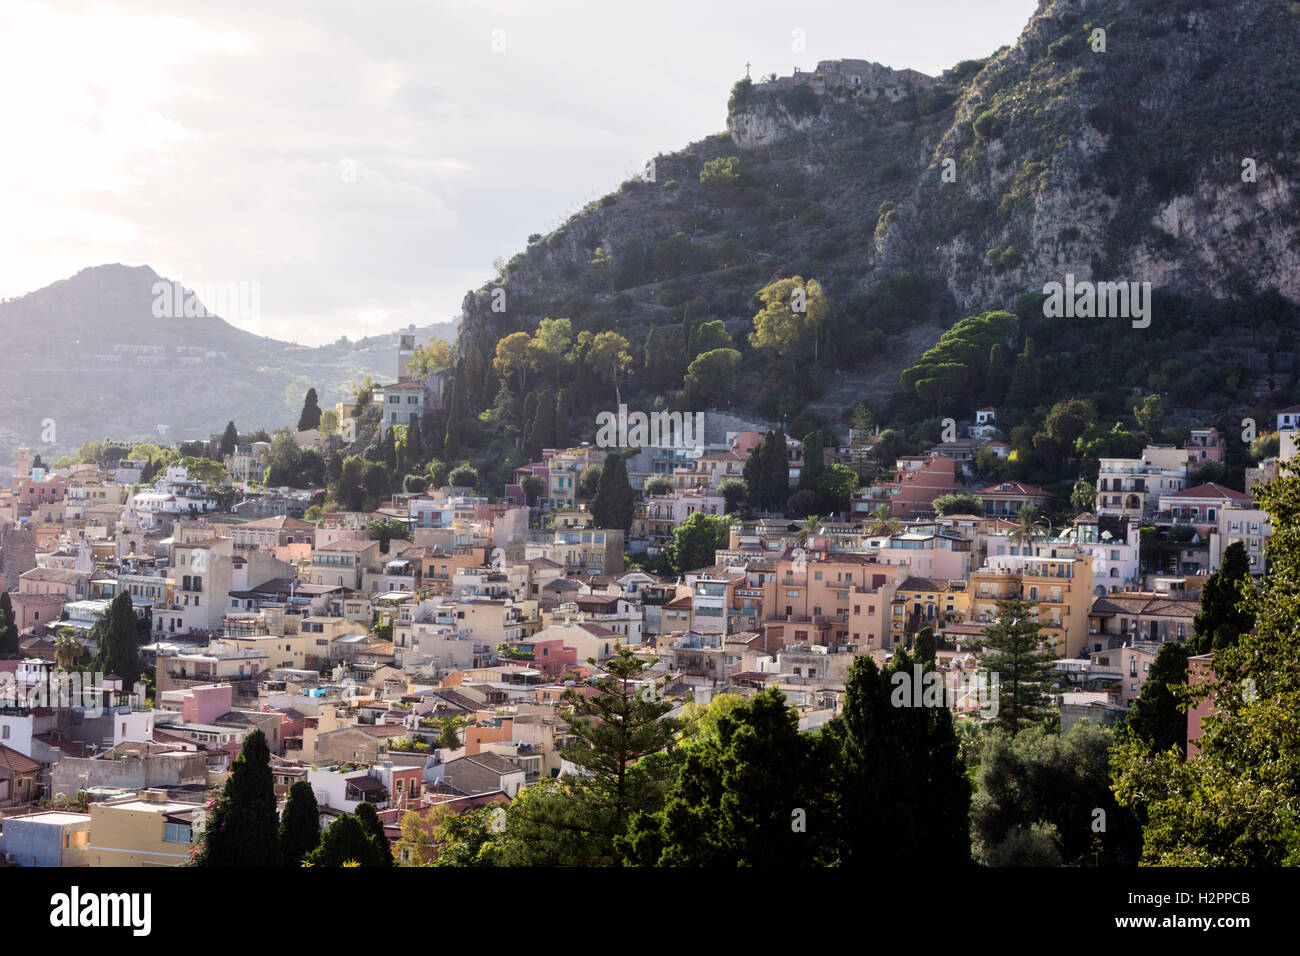 City of Taormina, Sicily, Italy Stock Photo